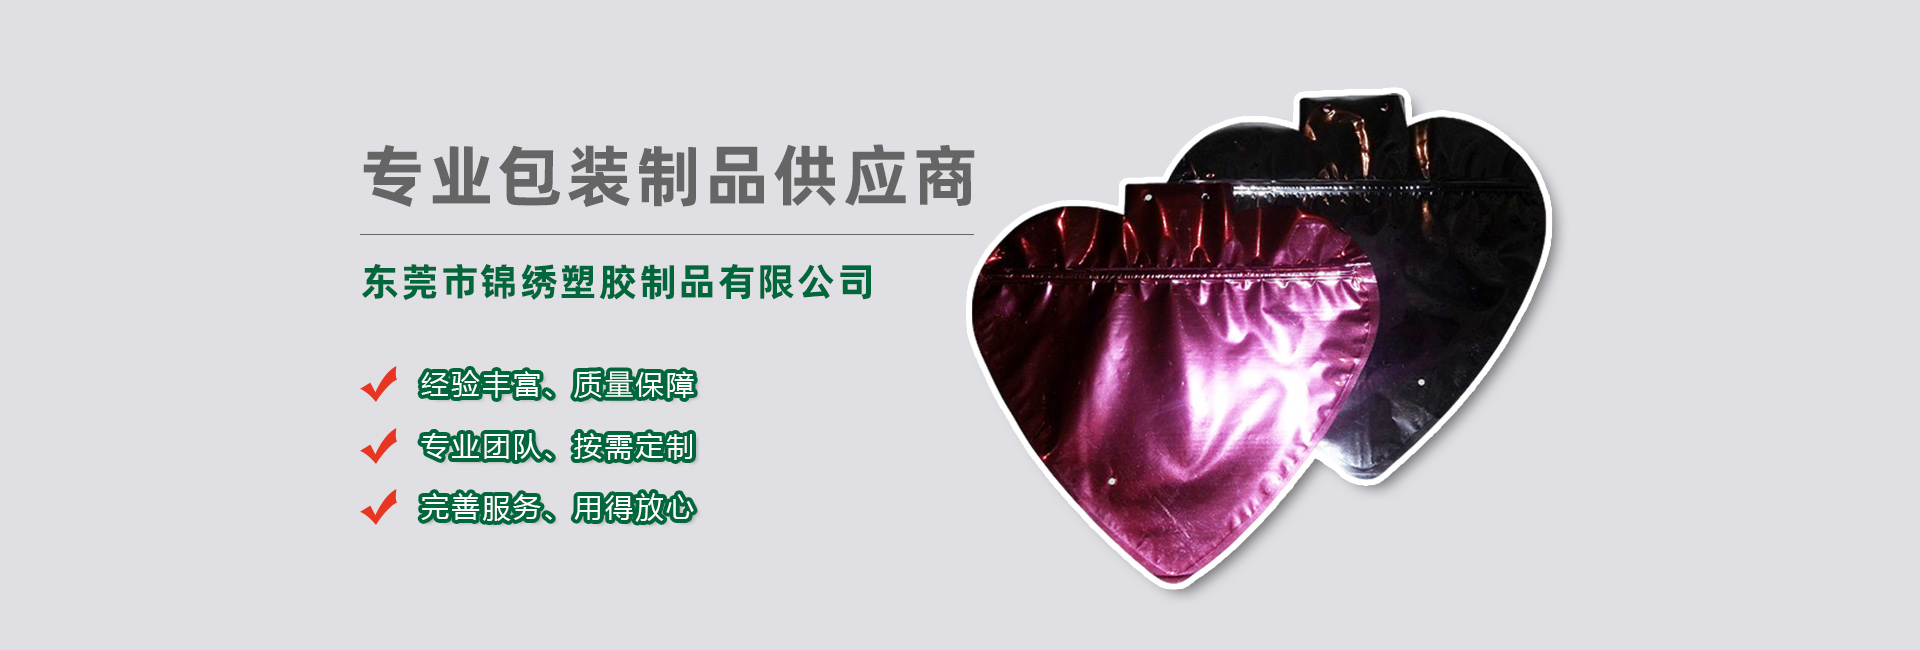 西青食品袋banner